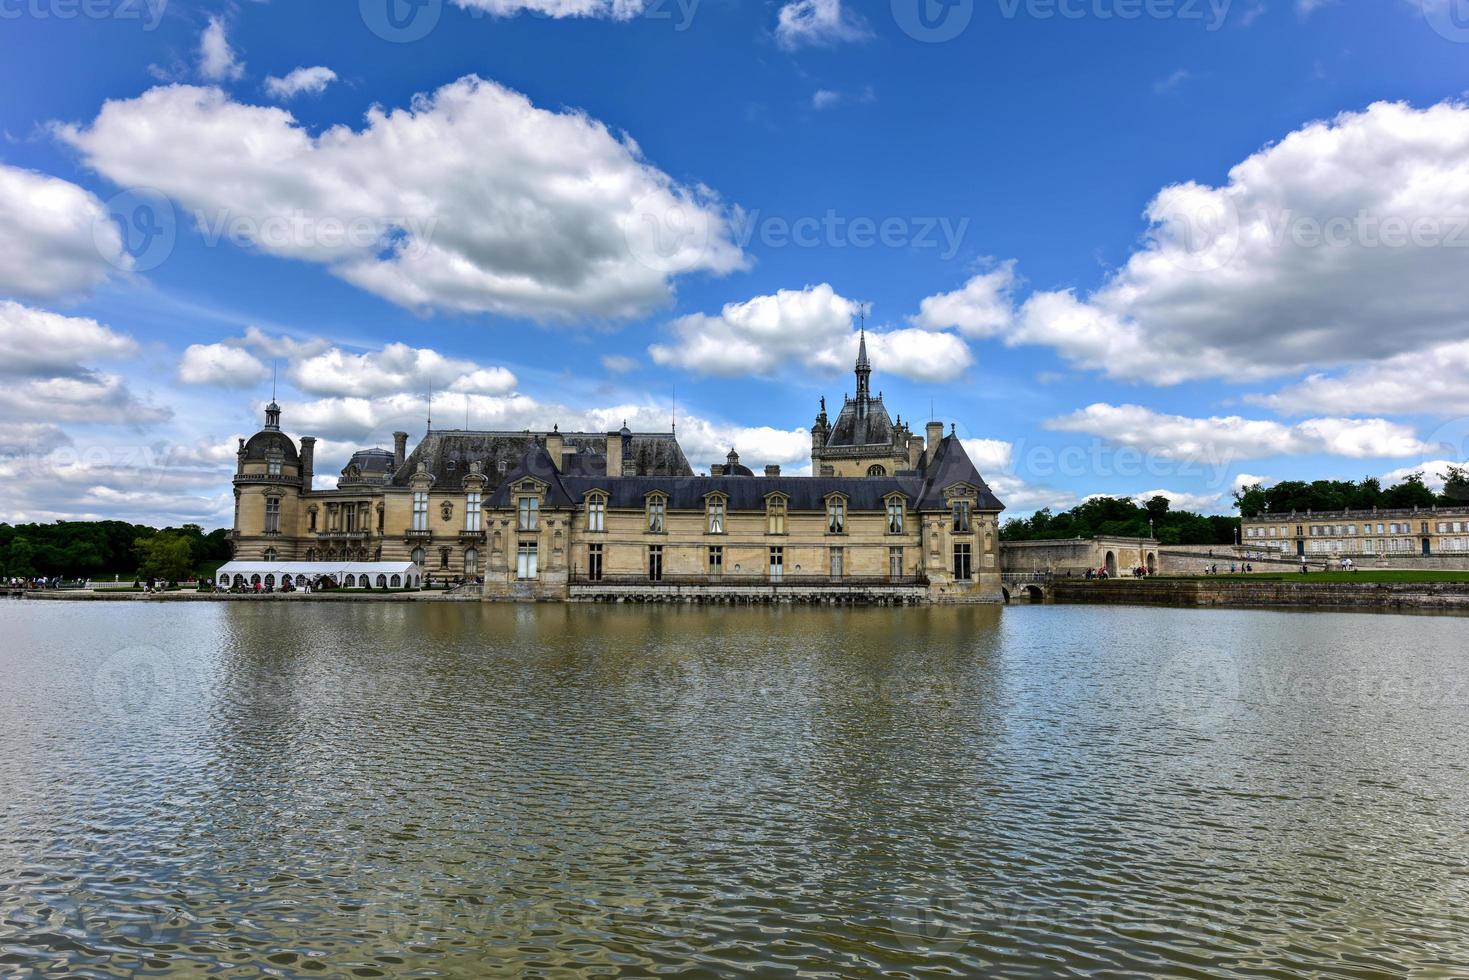 kasteel de chantilly, historisch kasteel gelegen in de stad- van chantilly, Frankrijk. foto